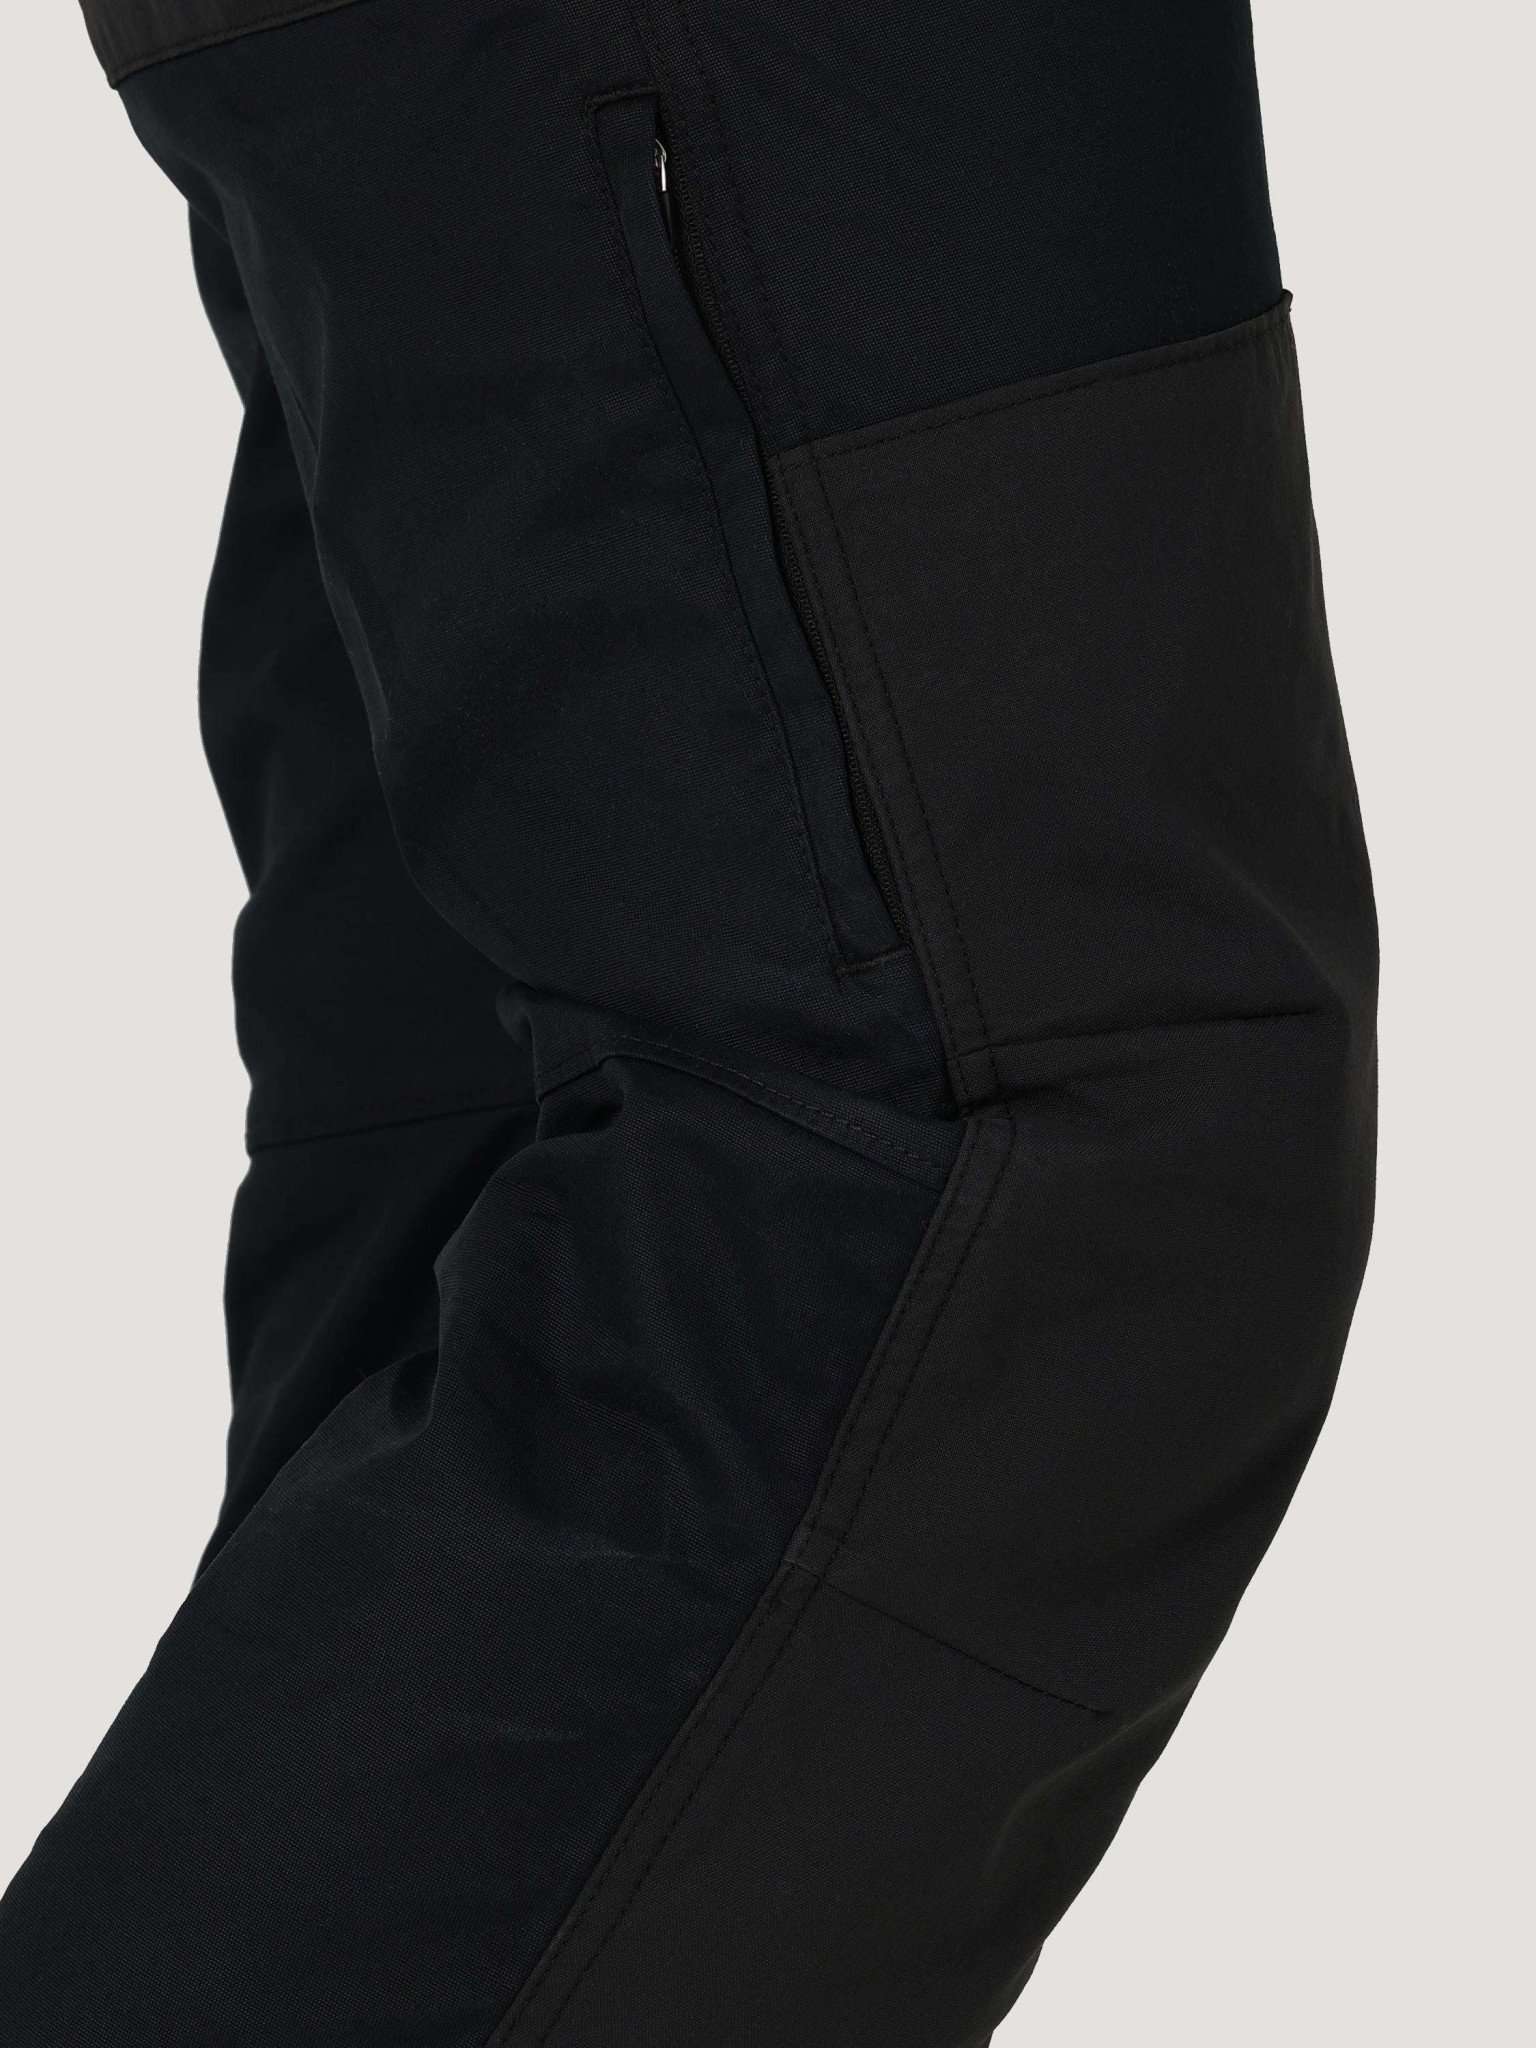 All Terrain Gear Reinforced Softshell Pant in Black Hosen Wrangler   